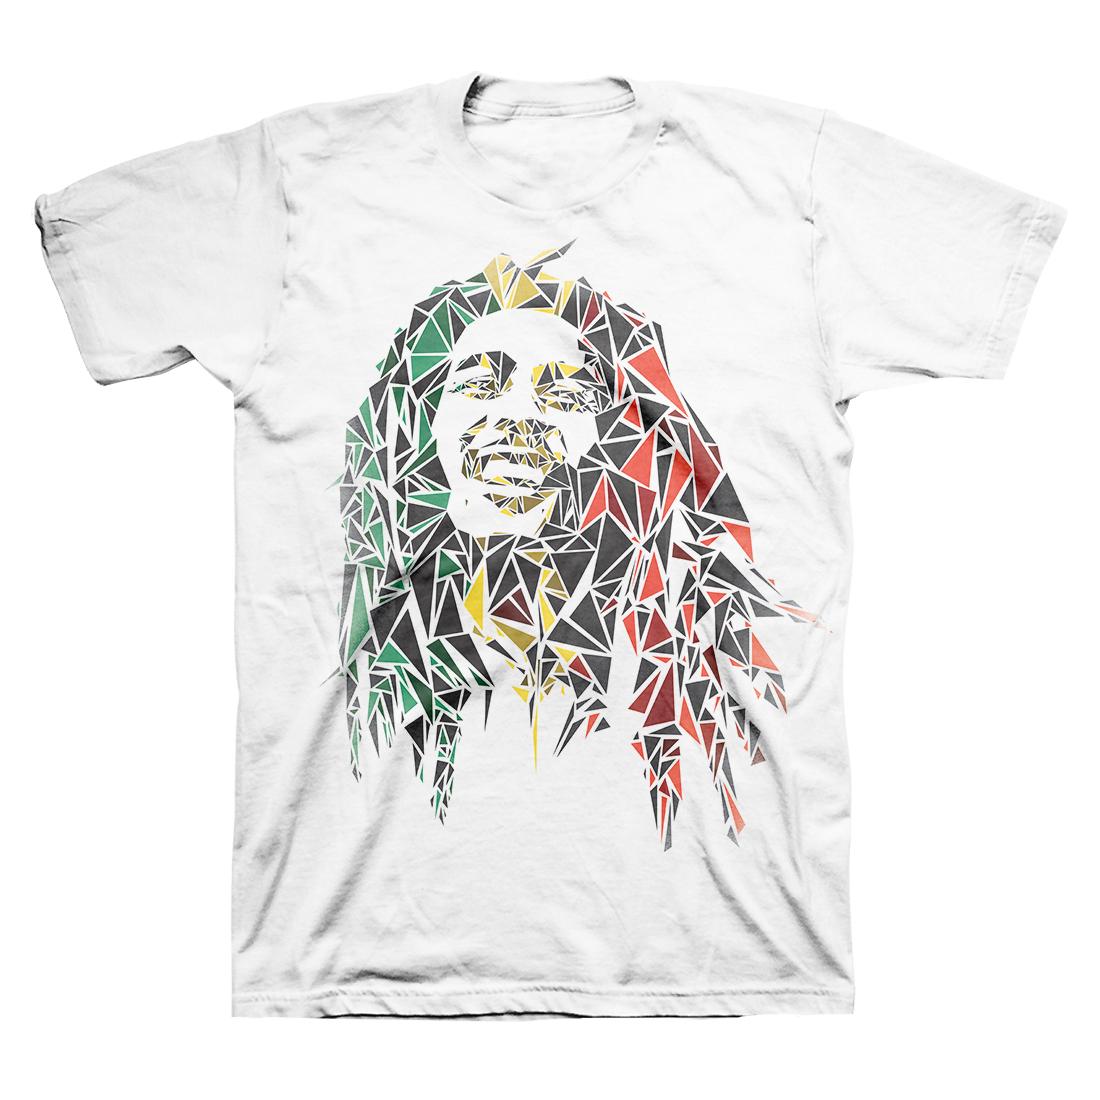 Bob Marley Mosaic T-Shirt - HalfMoonMusic